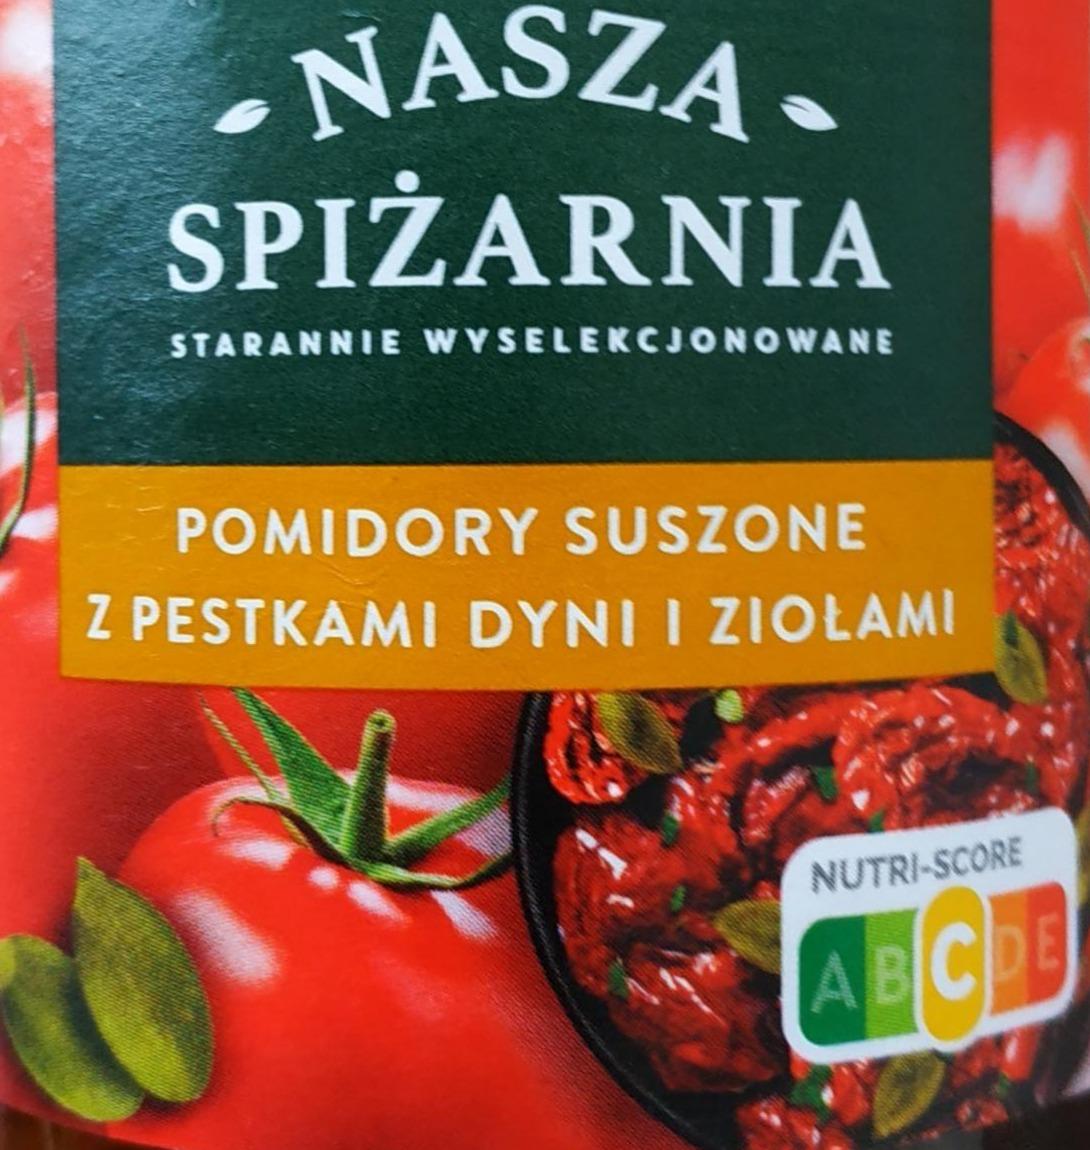 Zdjęcia - Pomidory suszone w oleju z ziolami z pestkami dyni Nasza Spiżarnia